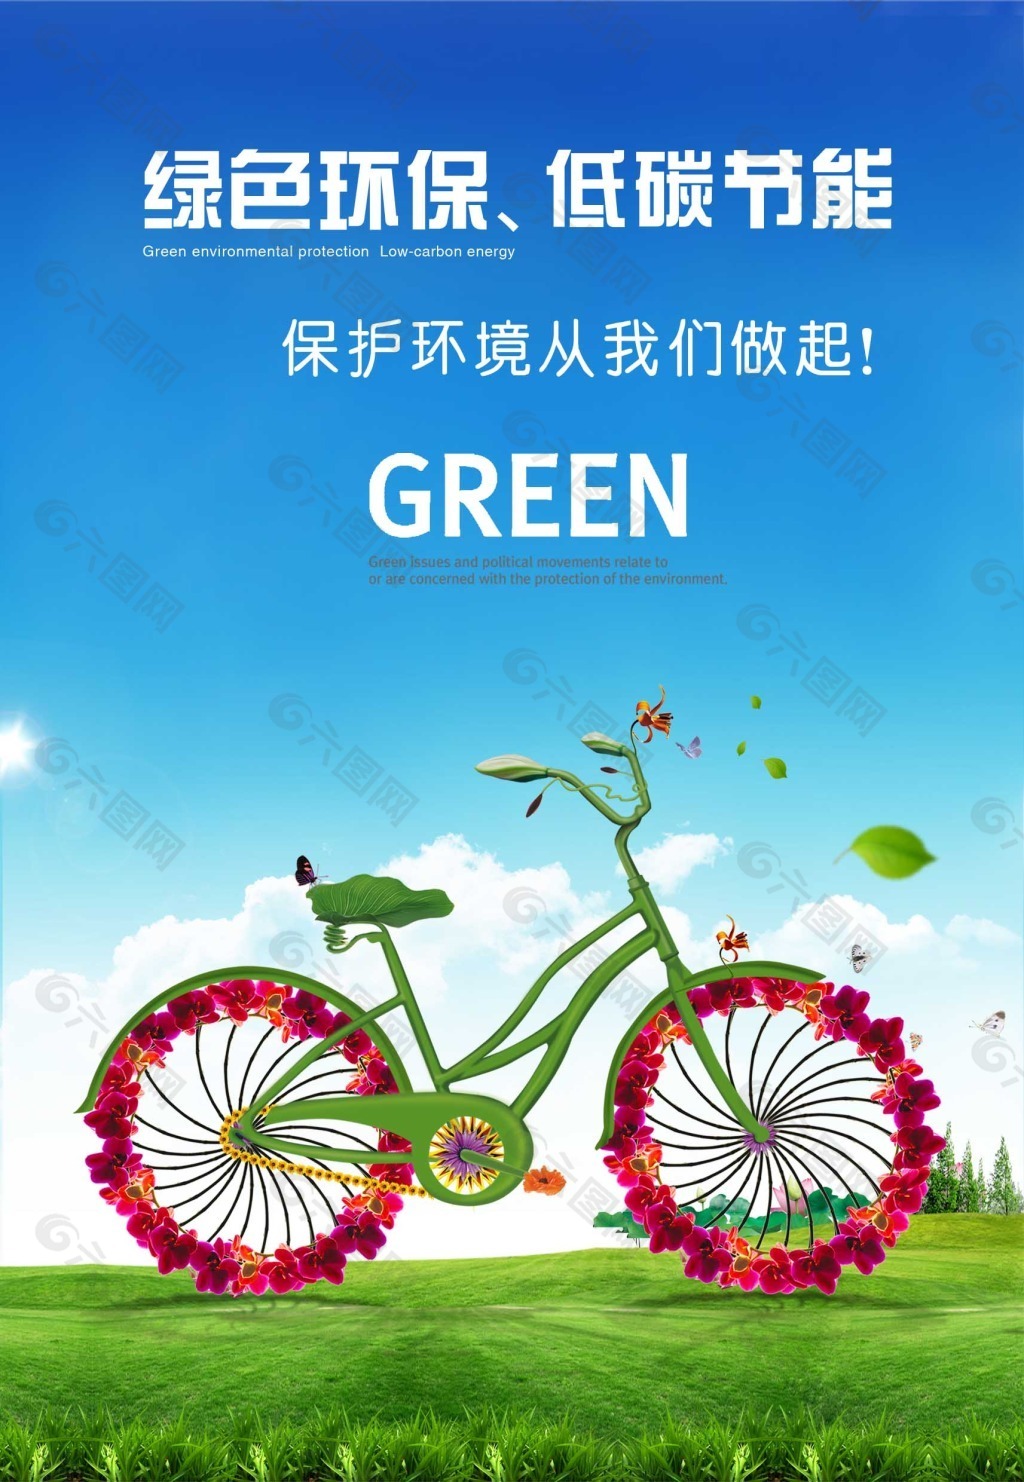 绿色环保 低碳节能